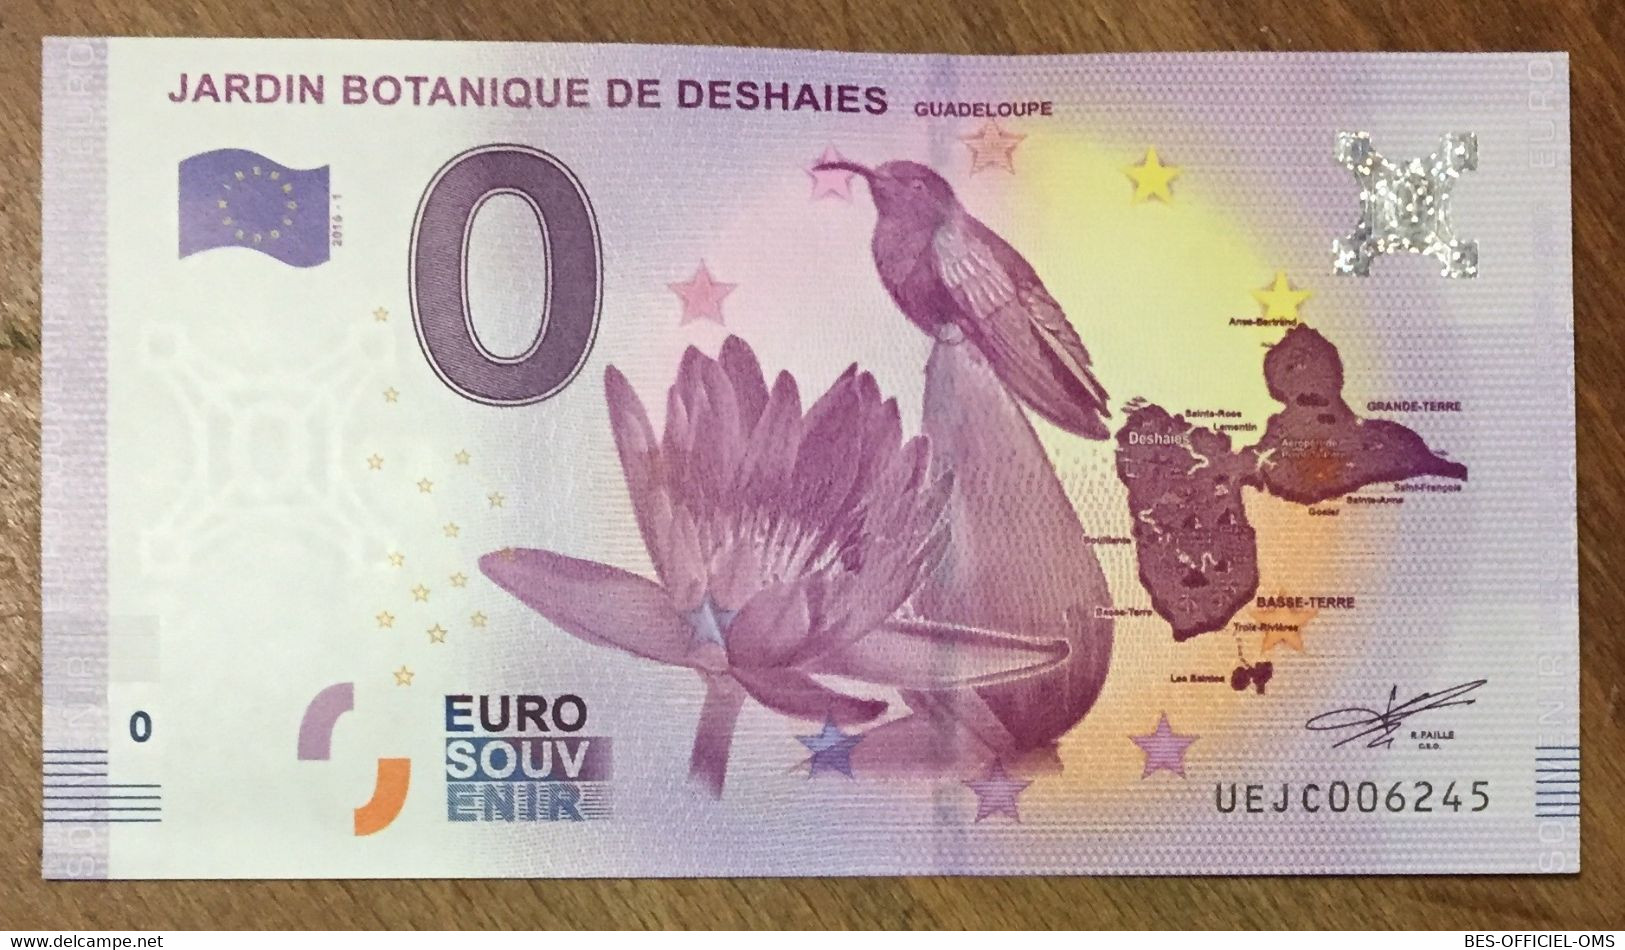 2016 BILLET 0 EURO SOUVENIR DPT 97 JARDIN BOTANIQUE DE DESHAIES GUADELOUPE ZERO 0 EURO SCHEIN BANKNOTE PAPER MONEY - Essais Privés / Non-officiels